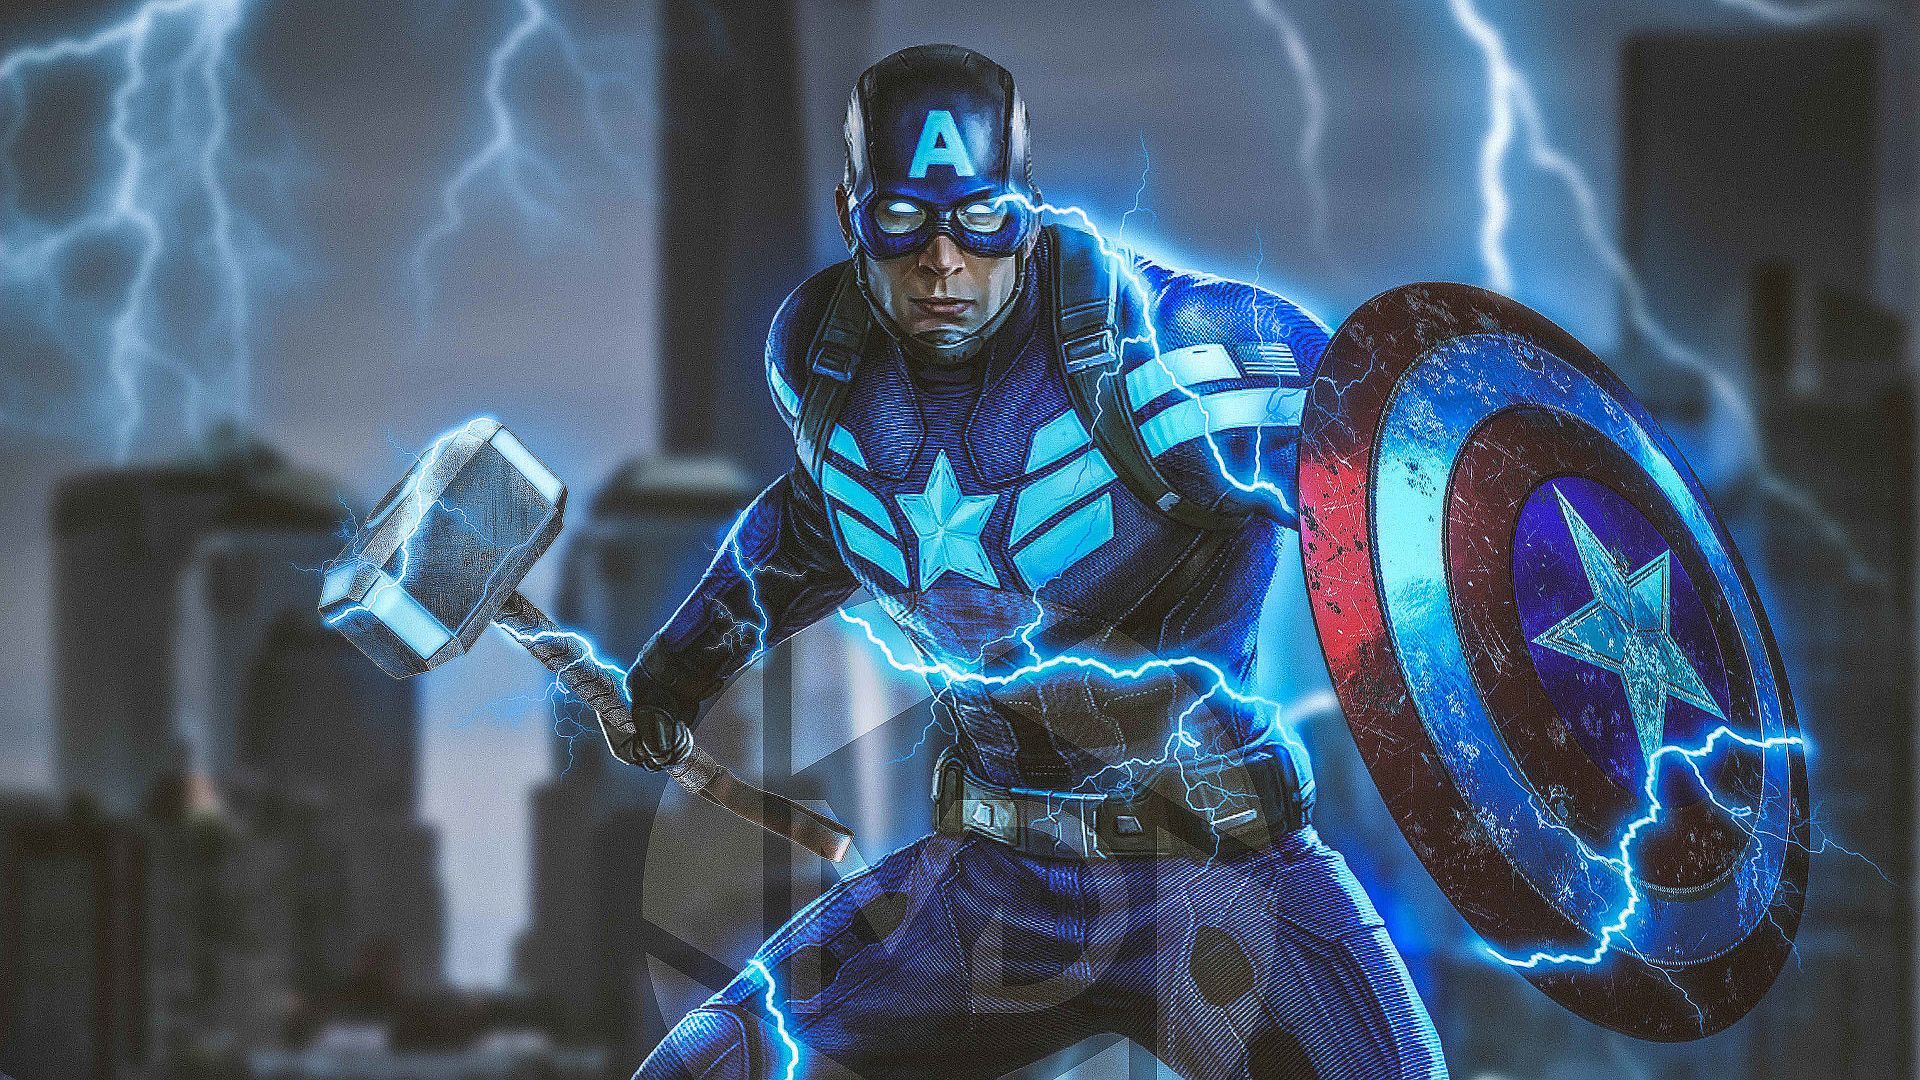 Captain America Mjolnir Avengers Endgame 4k 2019 Laptop